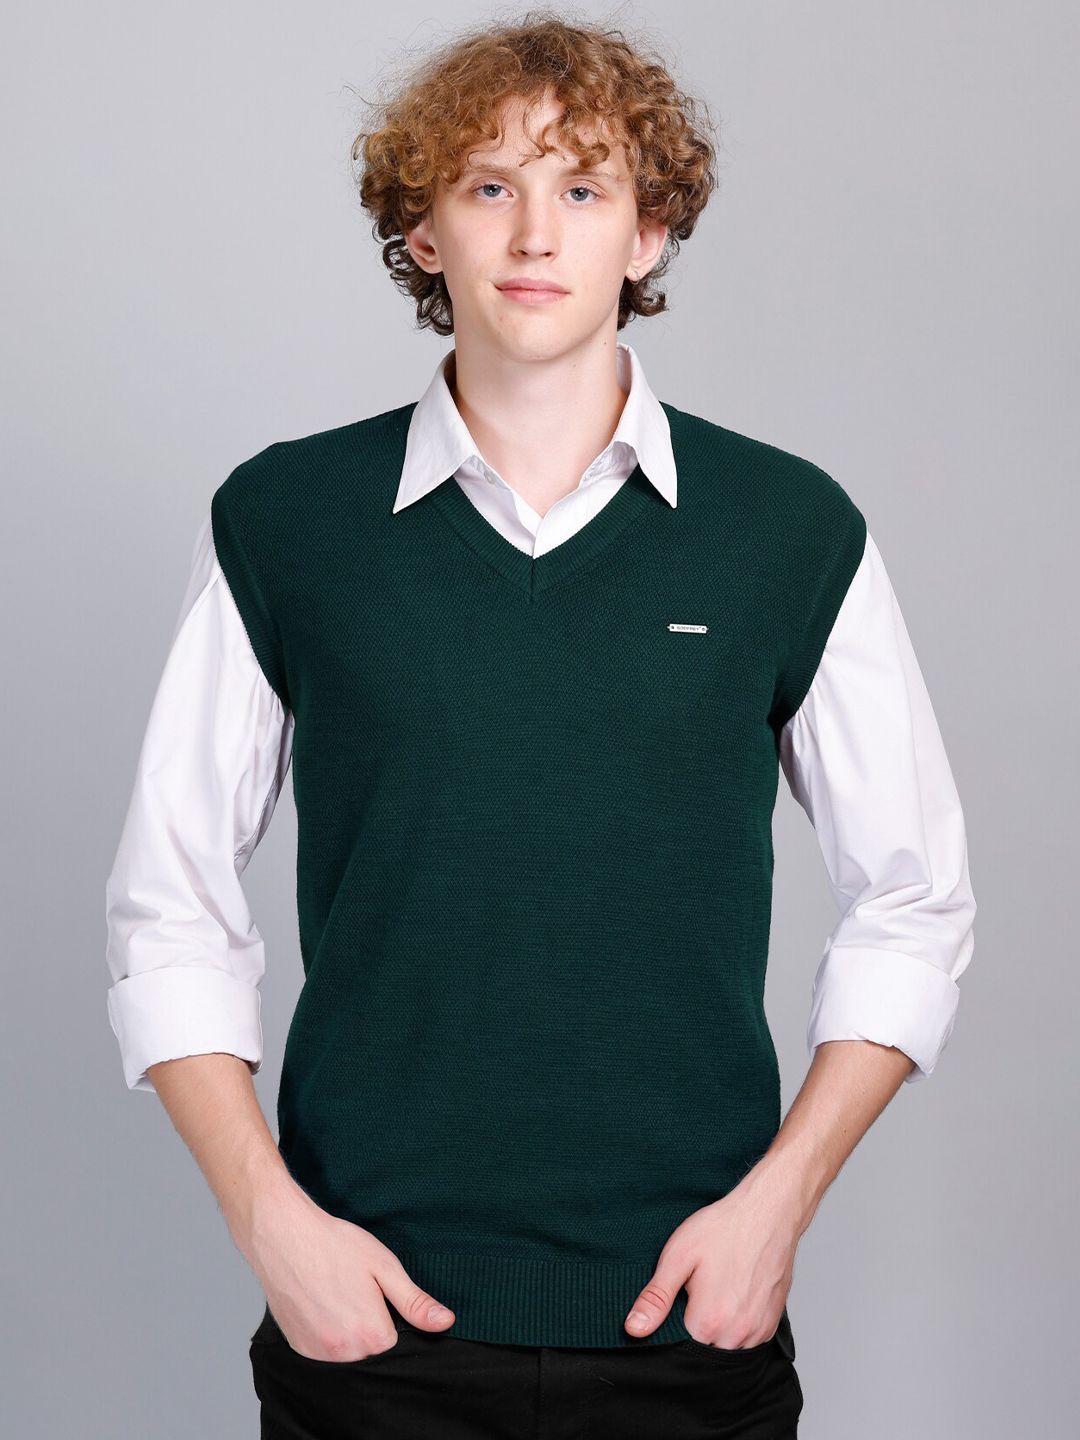 godfrey v-neck woollen sweater vest